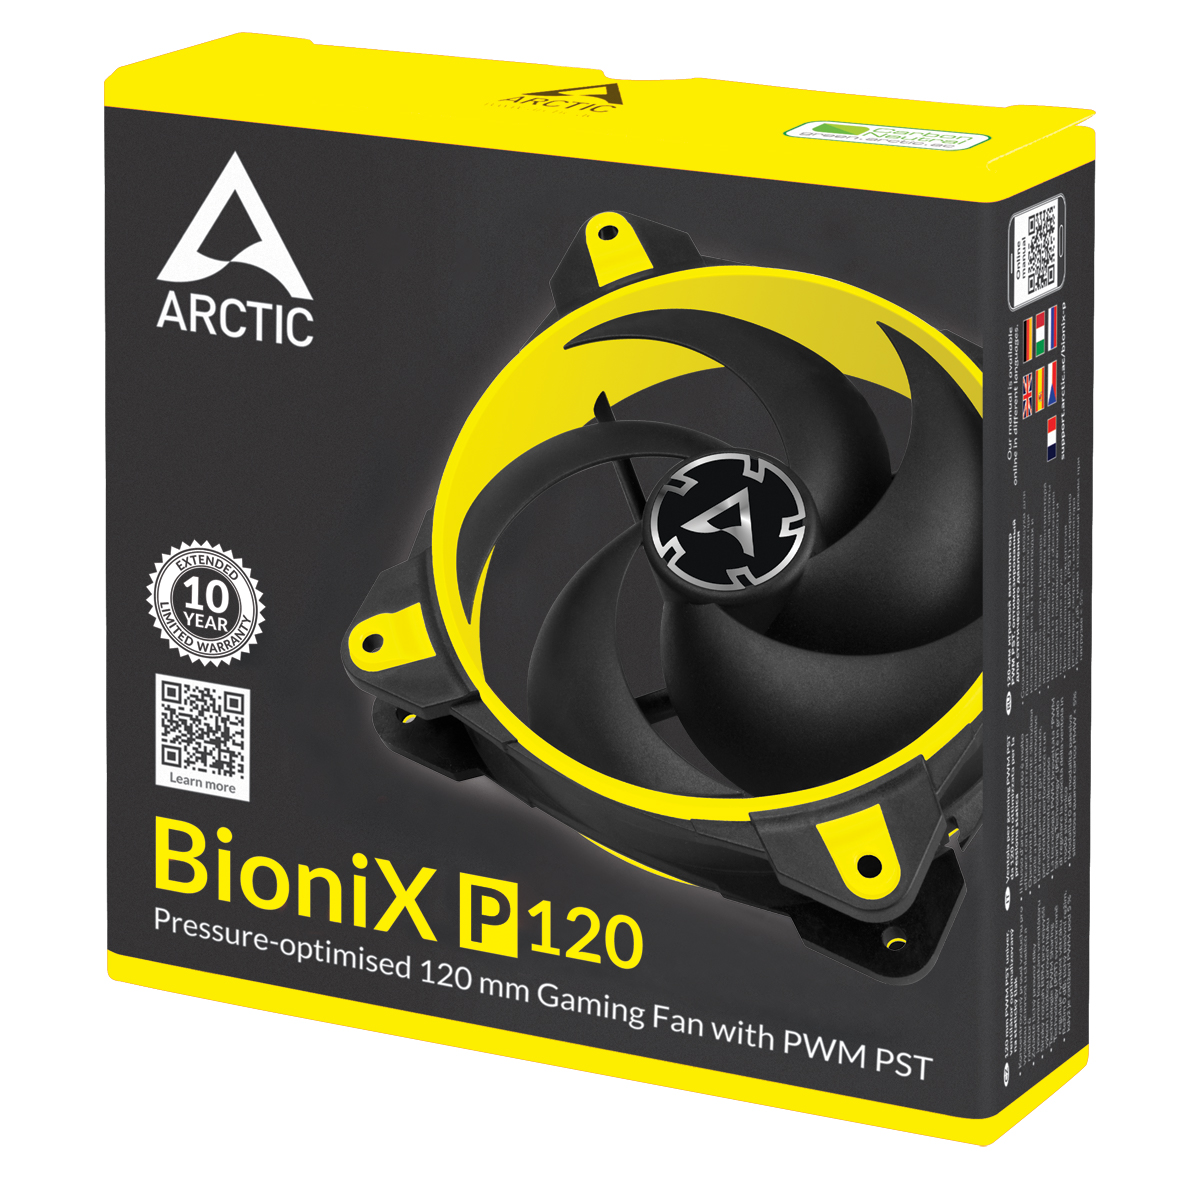 Bionix_P120_yellow_G05